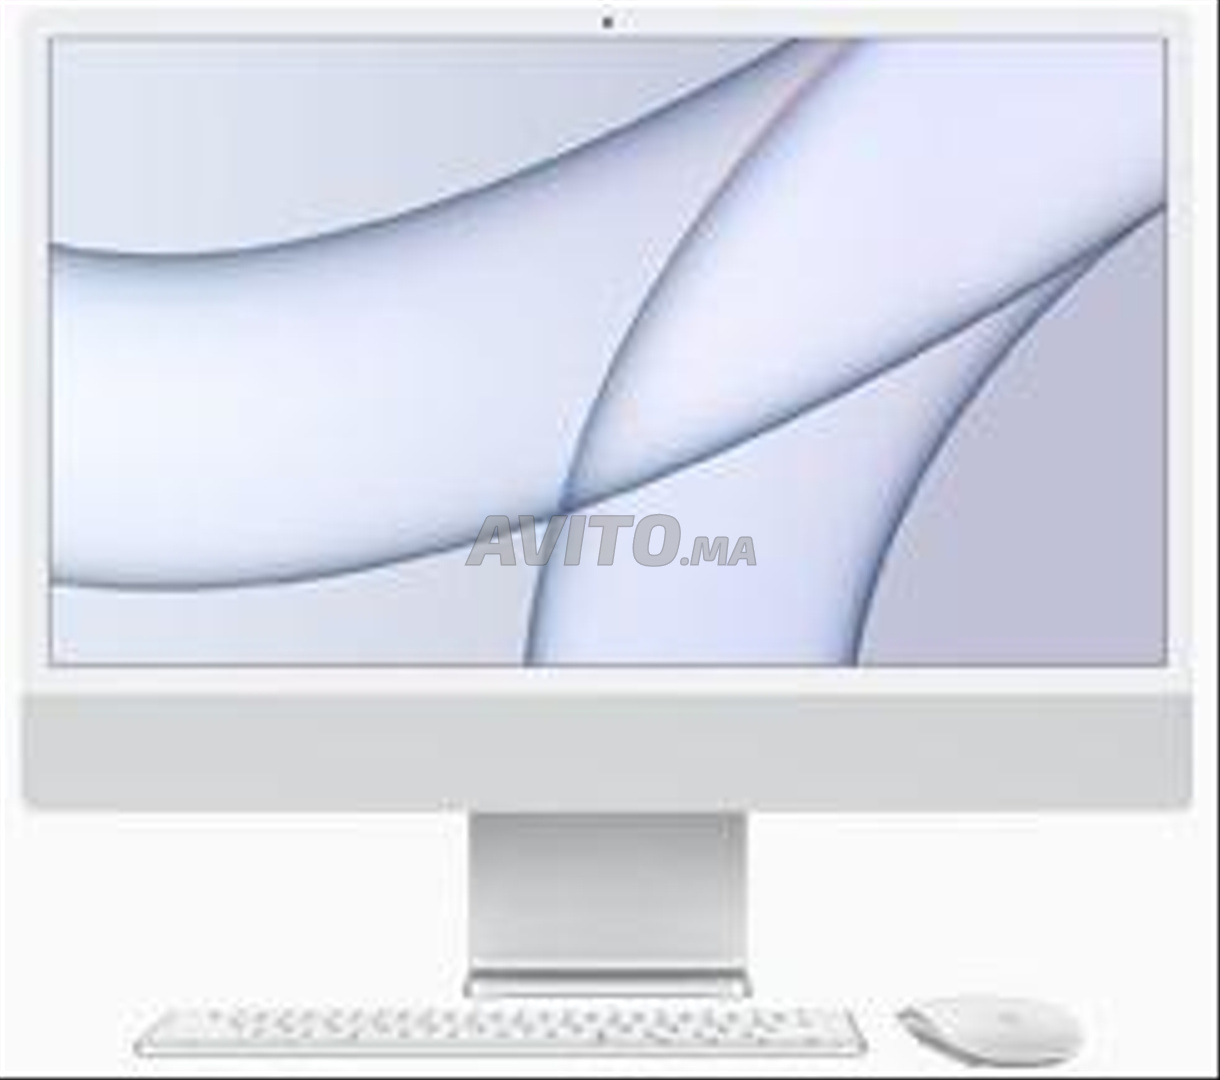 iMac M1 Hello 24 inch 8core CPU 8core GPU 256Gb - 3